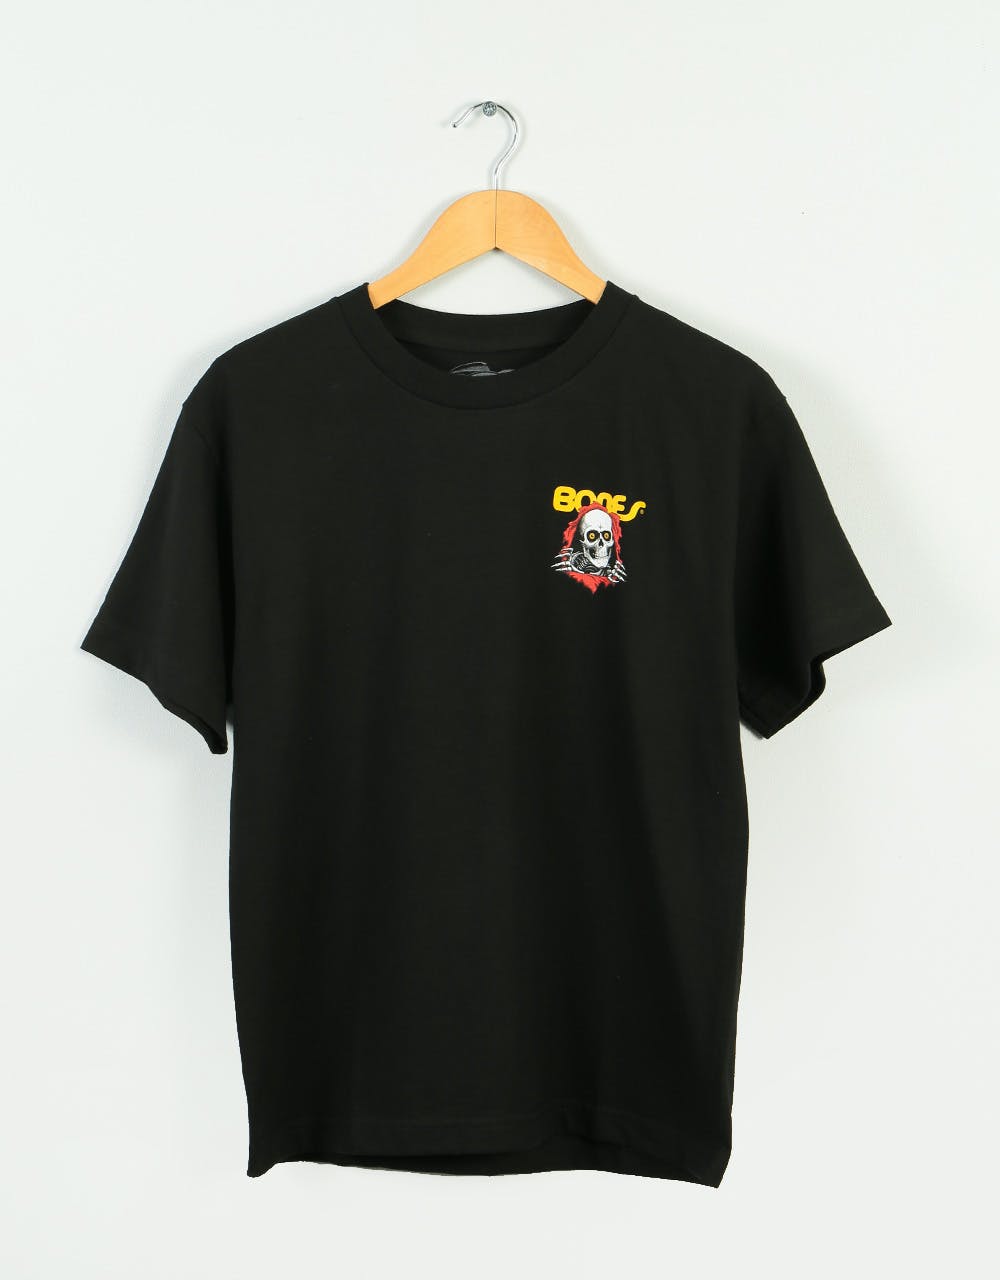 Powell Peralta Ripper Kids T-Shirt - Black